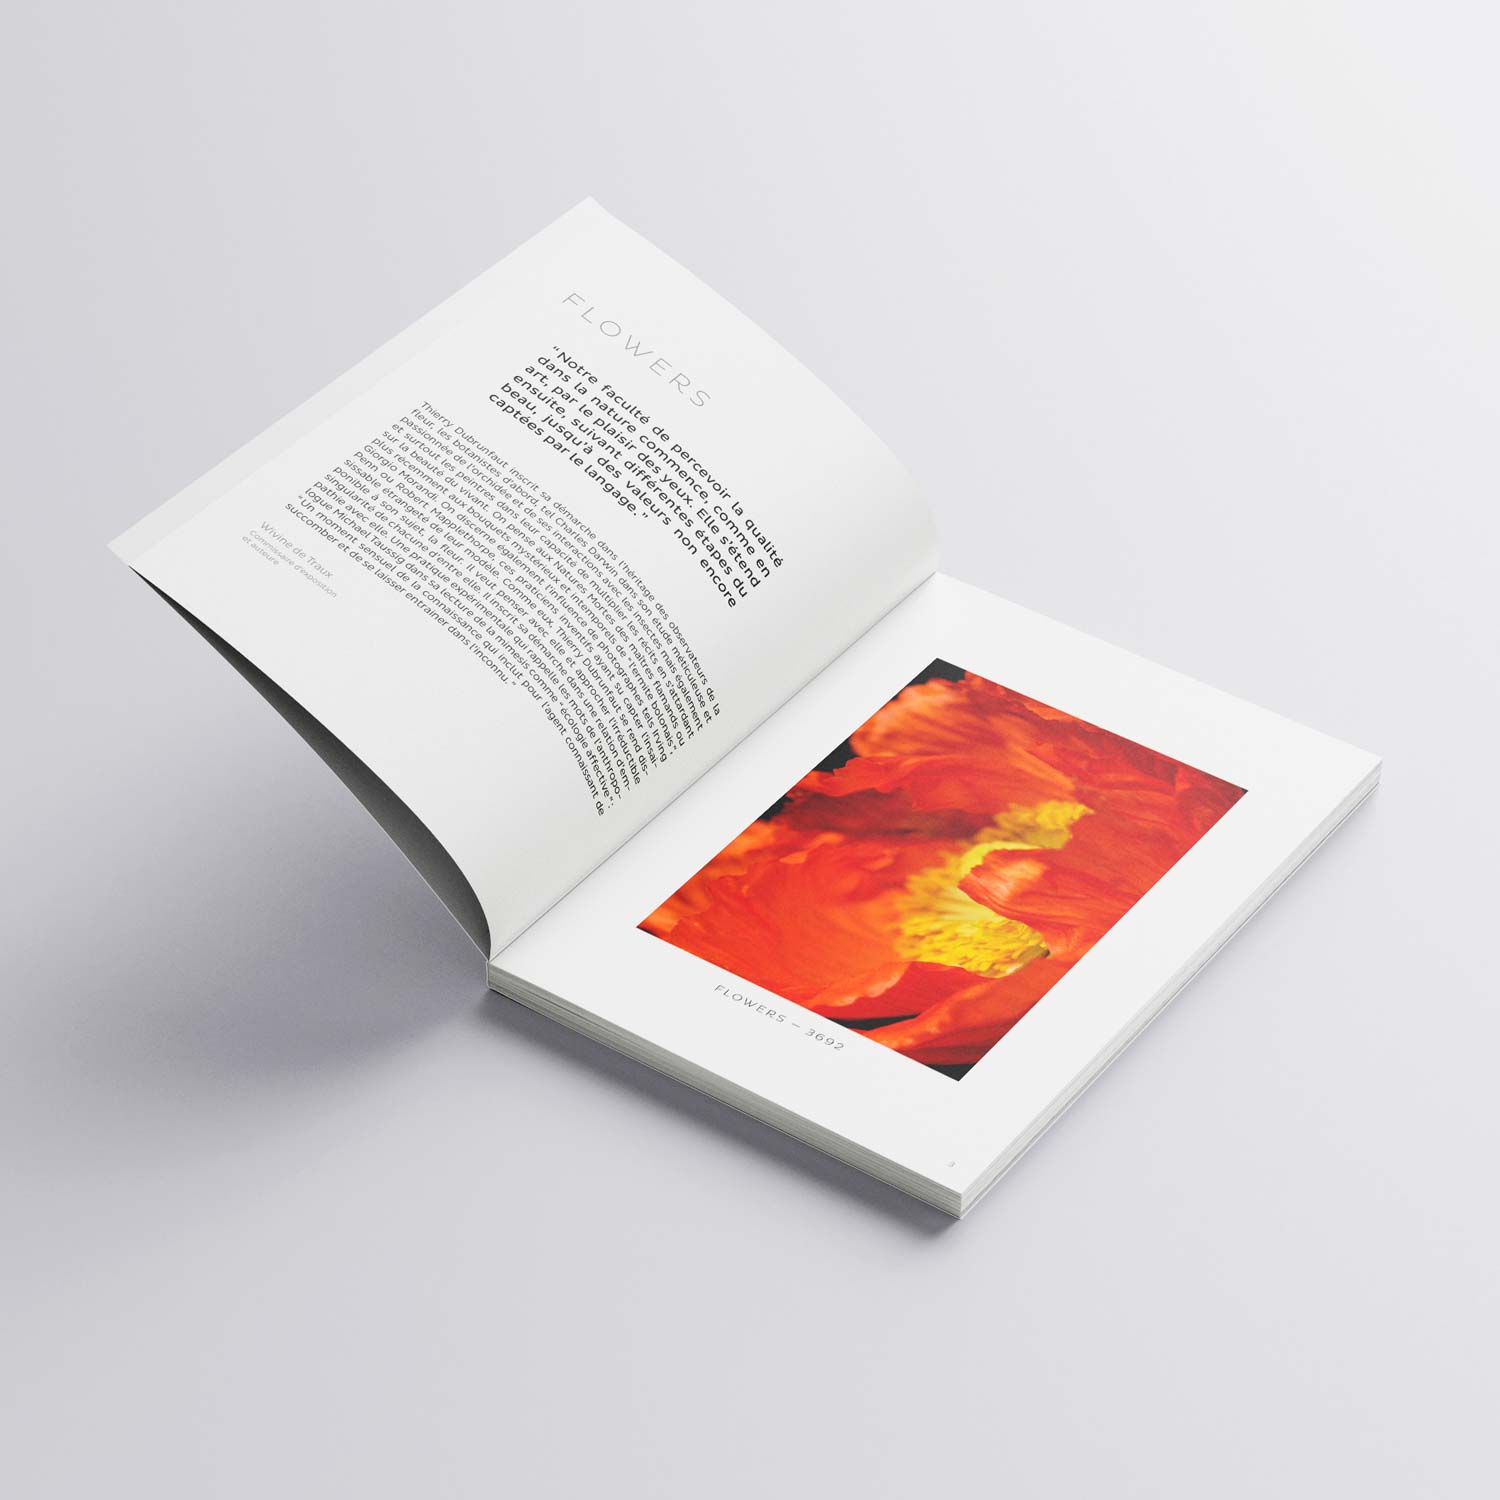 Thierry Dubrunfaut, Exposition FLOWERS, Livre d'art, Labelpages